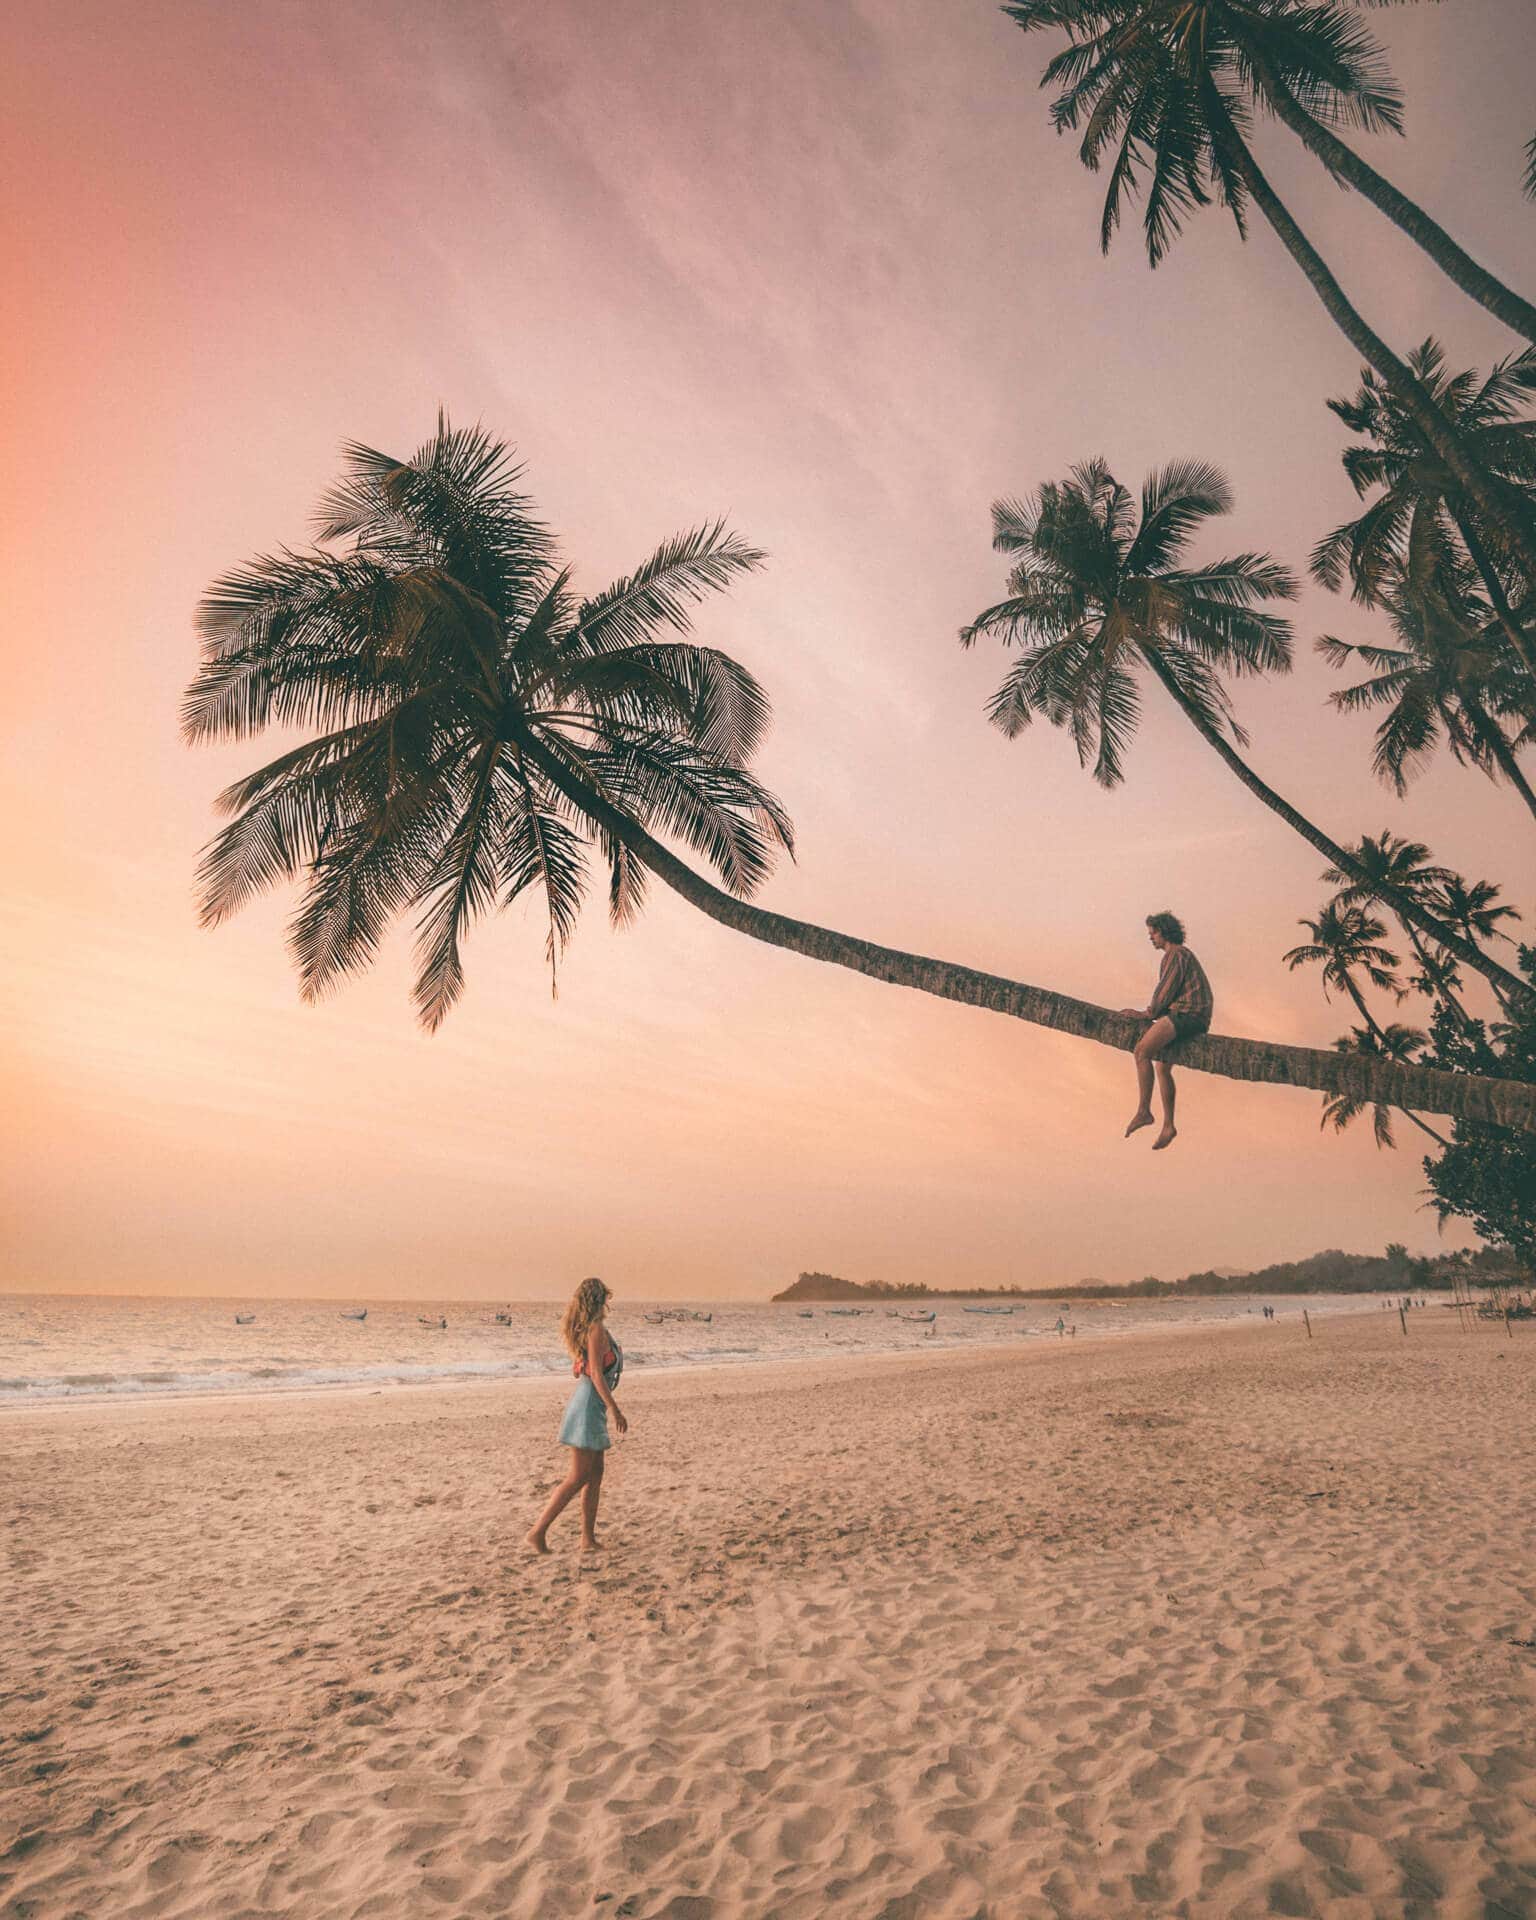 ngapali most beautiful beach sunset palm